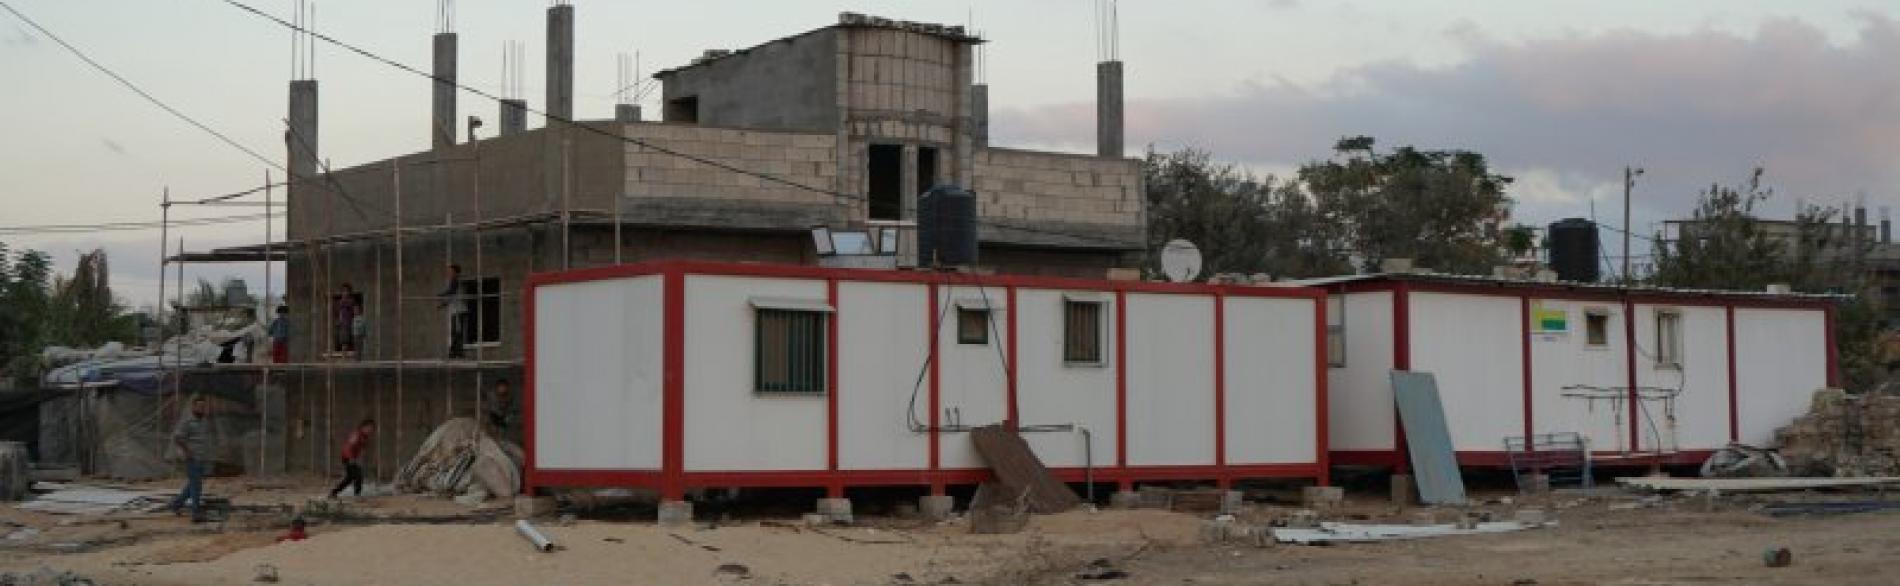 קרוואנים שבהם מתגוררות משפחות שנעקרו במהלך הסכסוך ב־2014, ג׳והר א־דיכ, עזה, נובמבר 2016